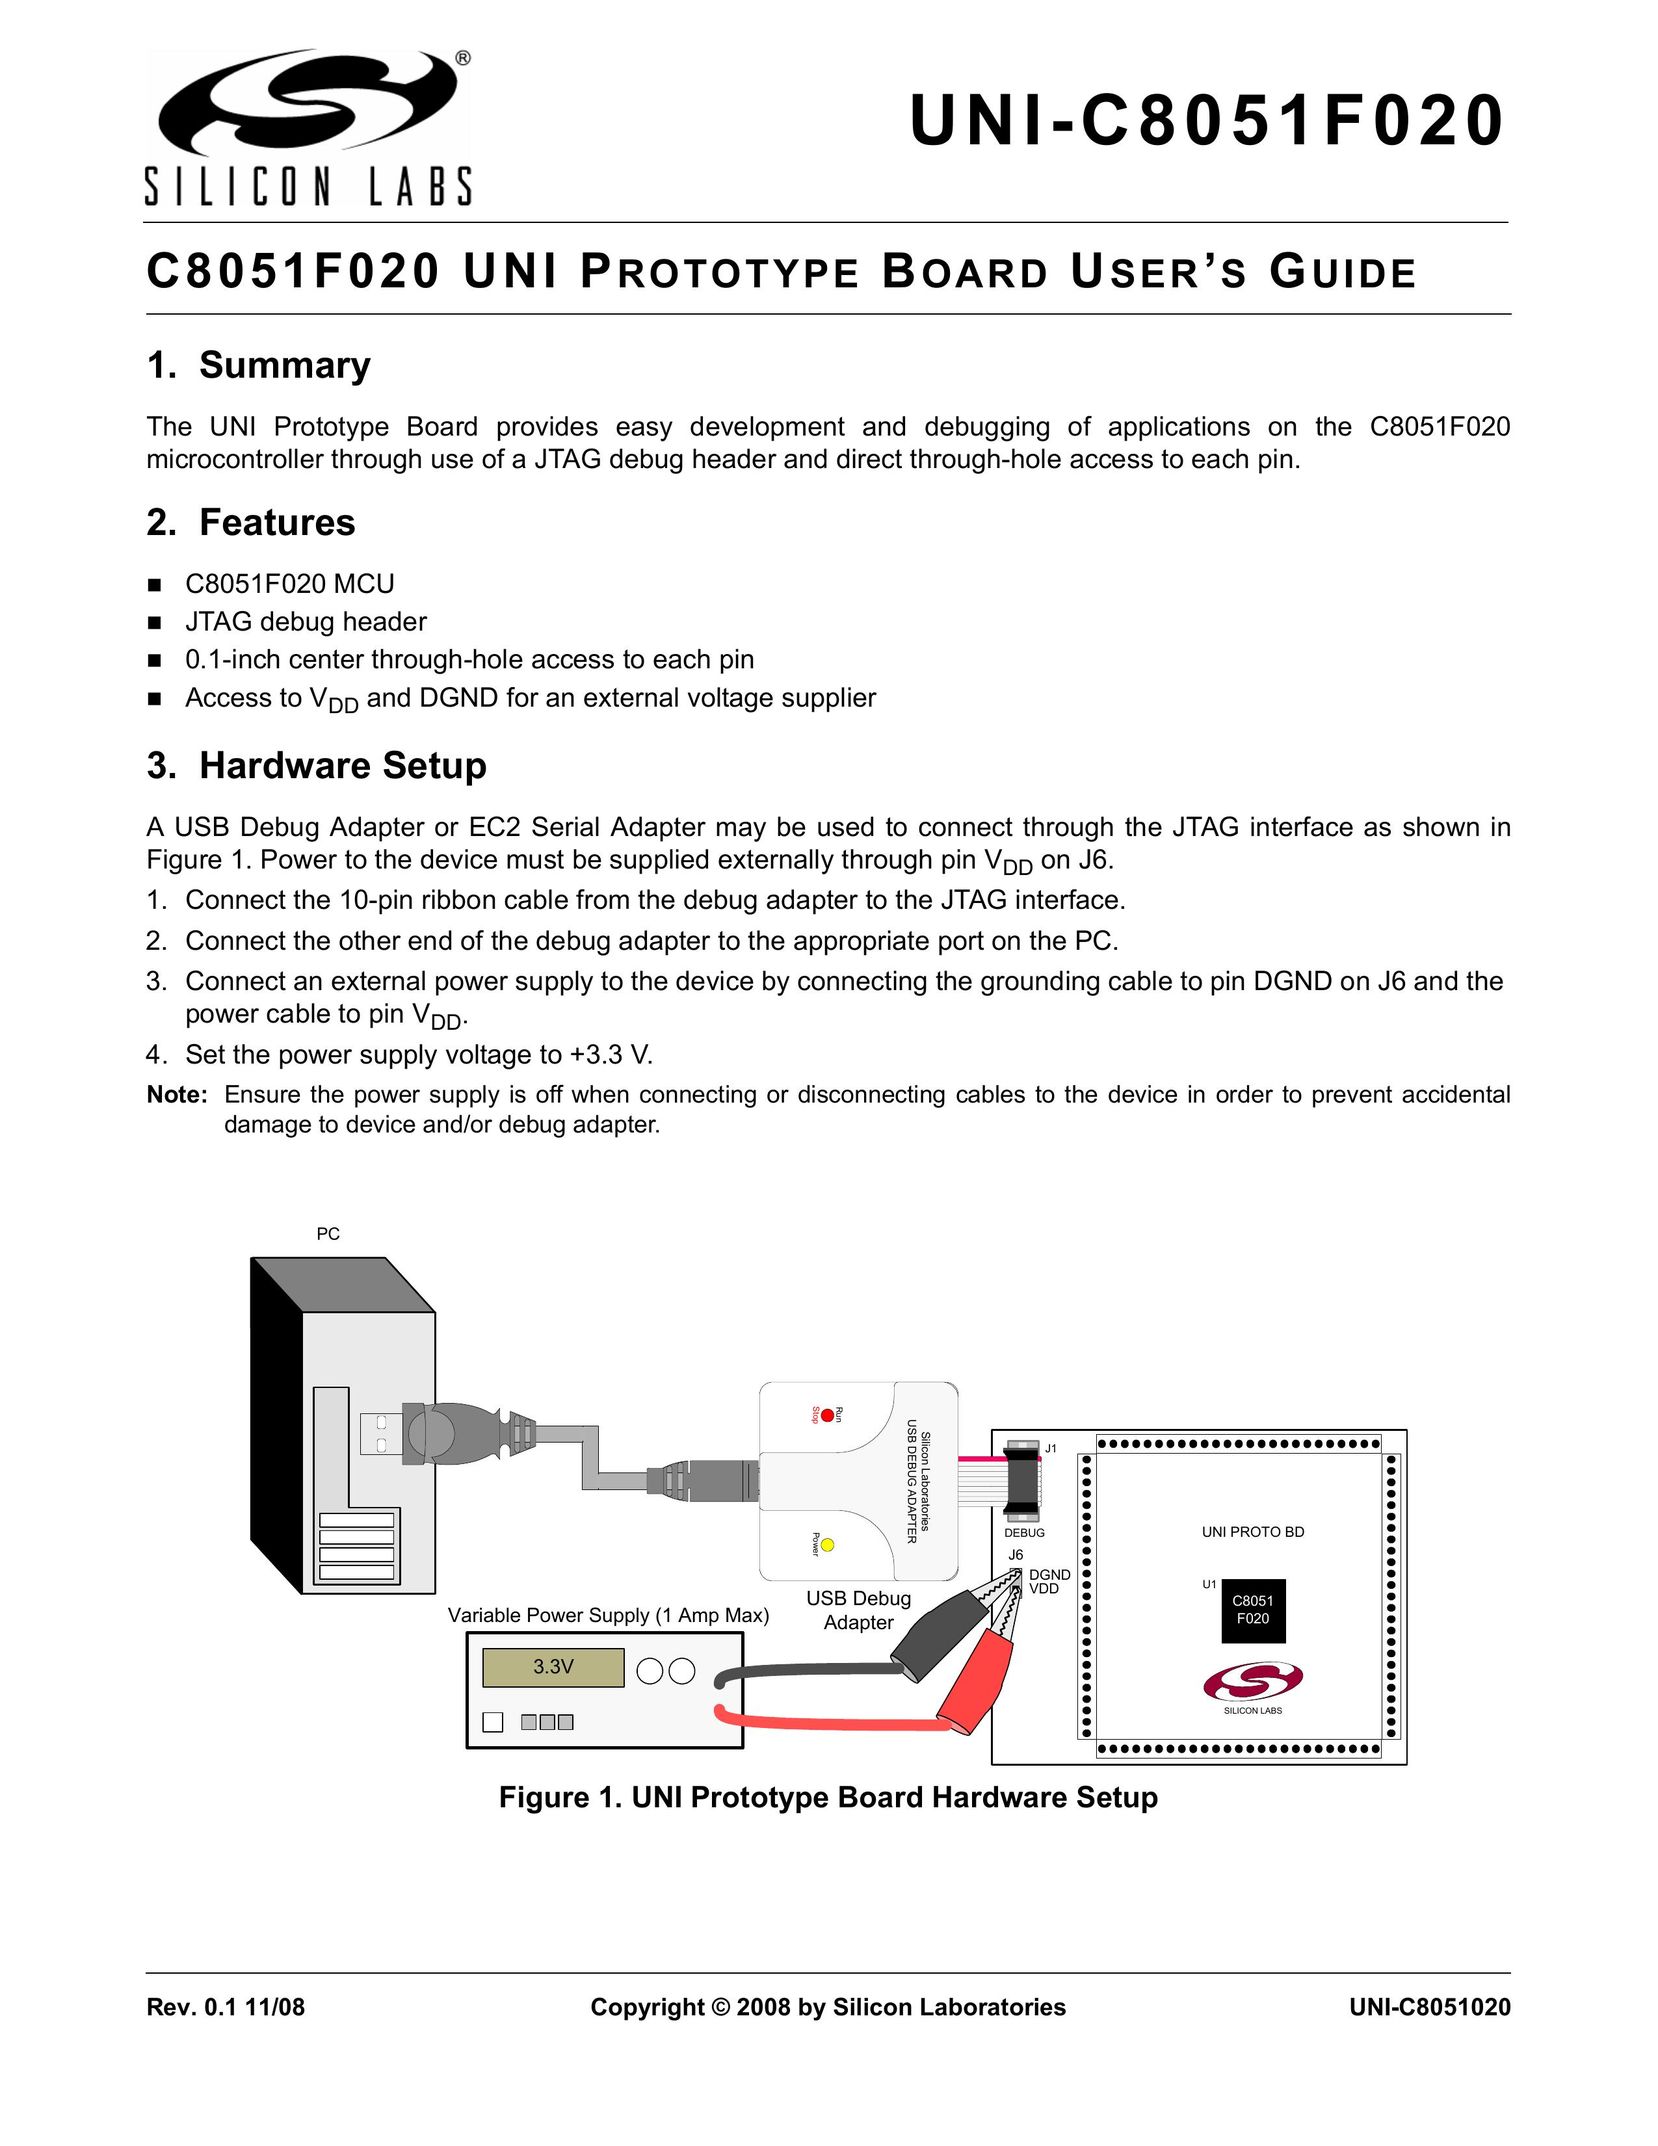 Silicon Laboratories UNI-C8051F020 Computer Hardware User Manual